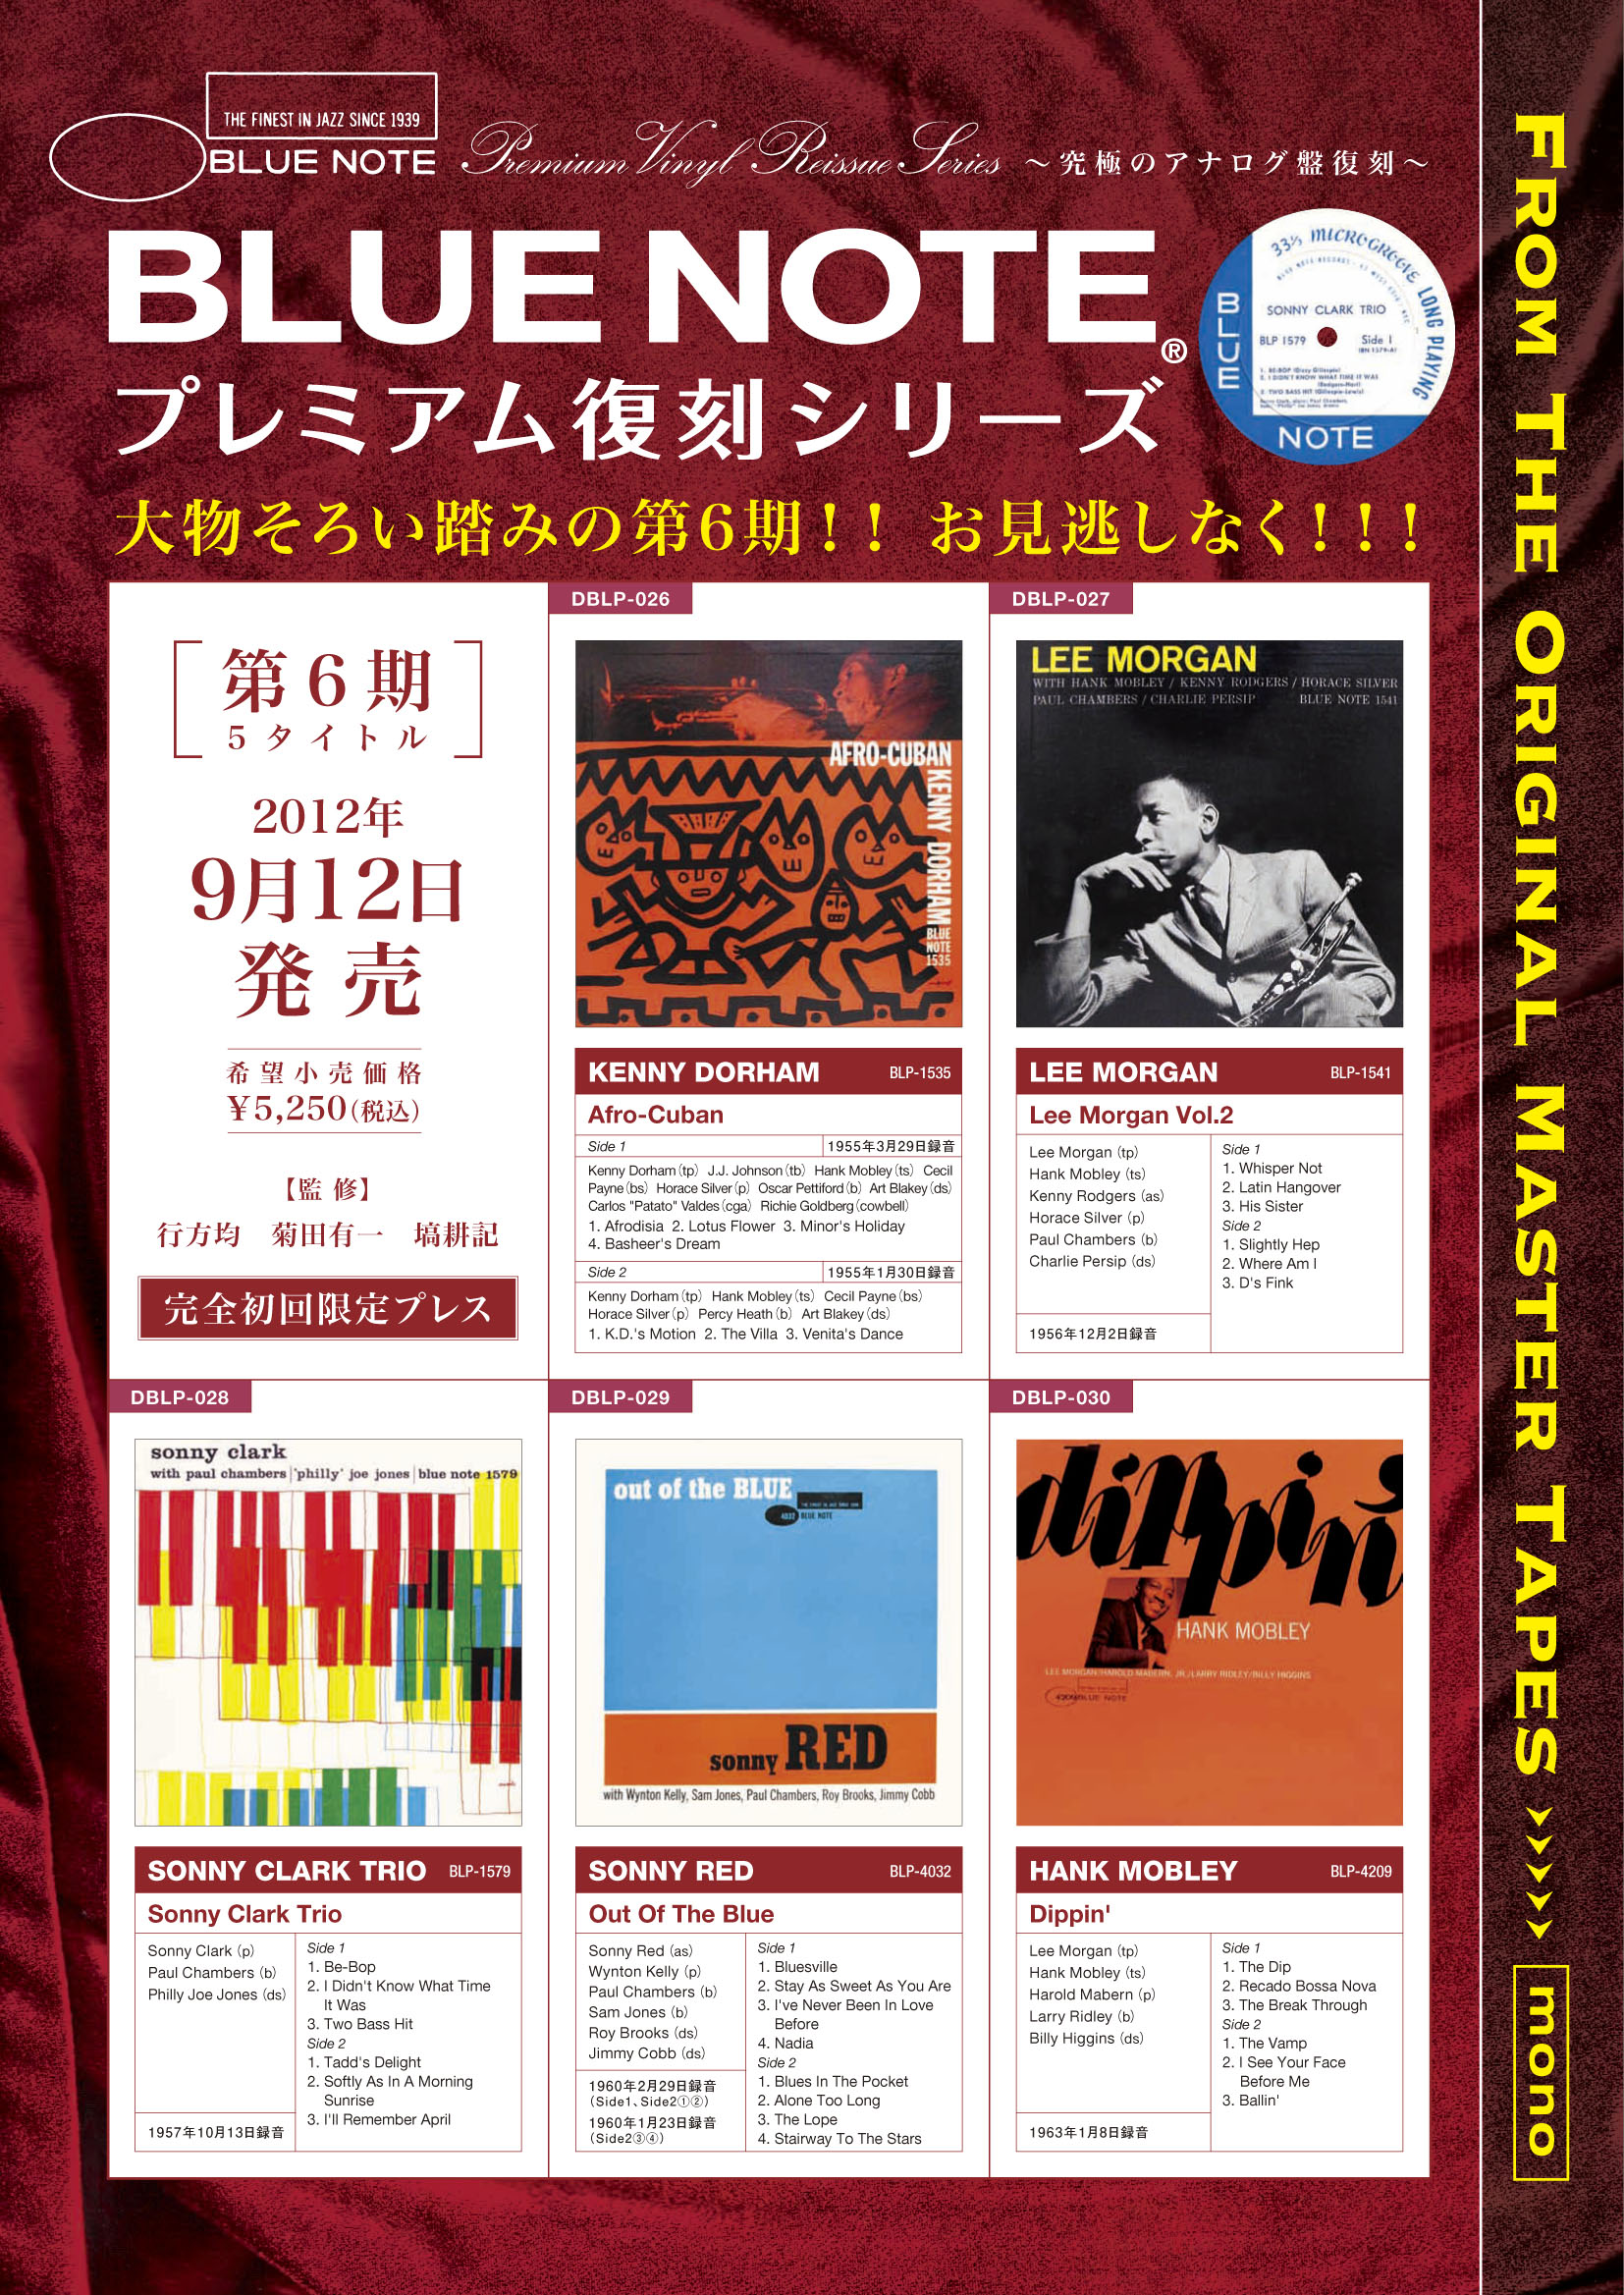 SONNY CLARK TRIO (ソニー・クラーク・トリオ) (LP 200g重量盤